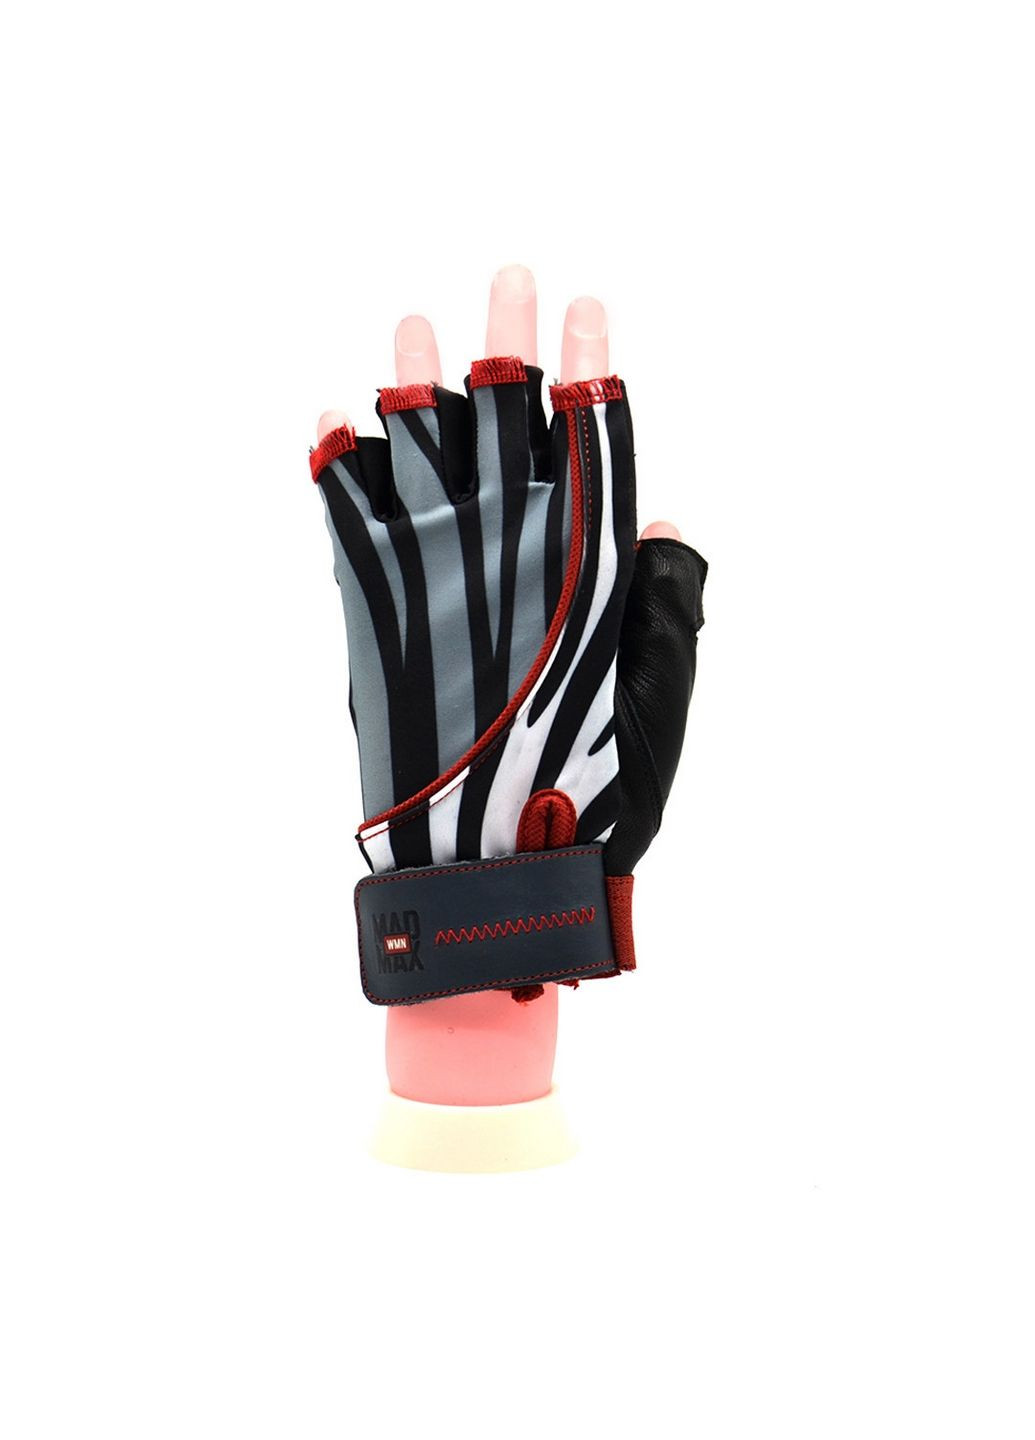 Унісекс рукавички для фітнесу S Mad Max (279322267)